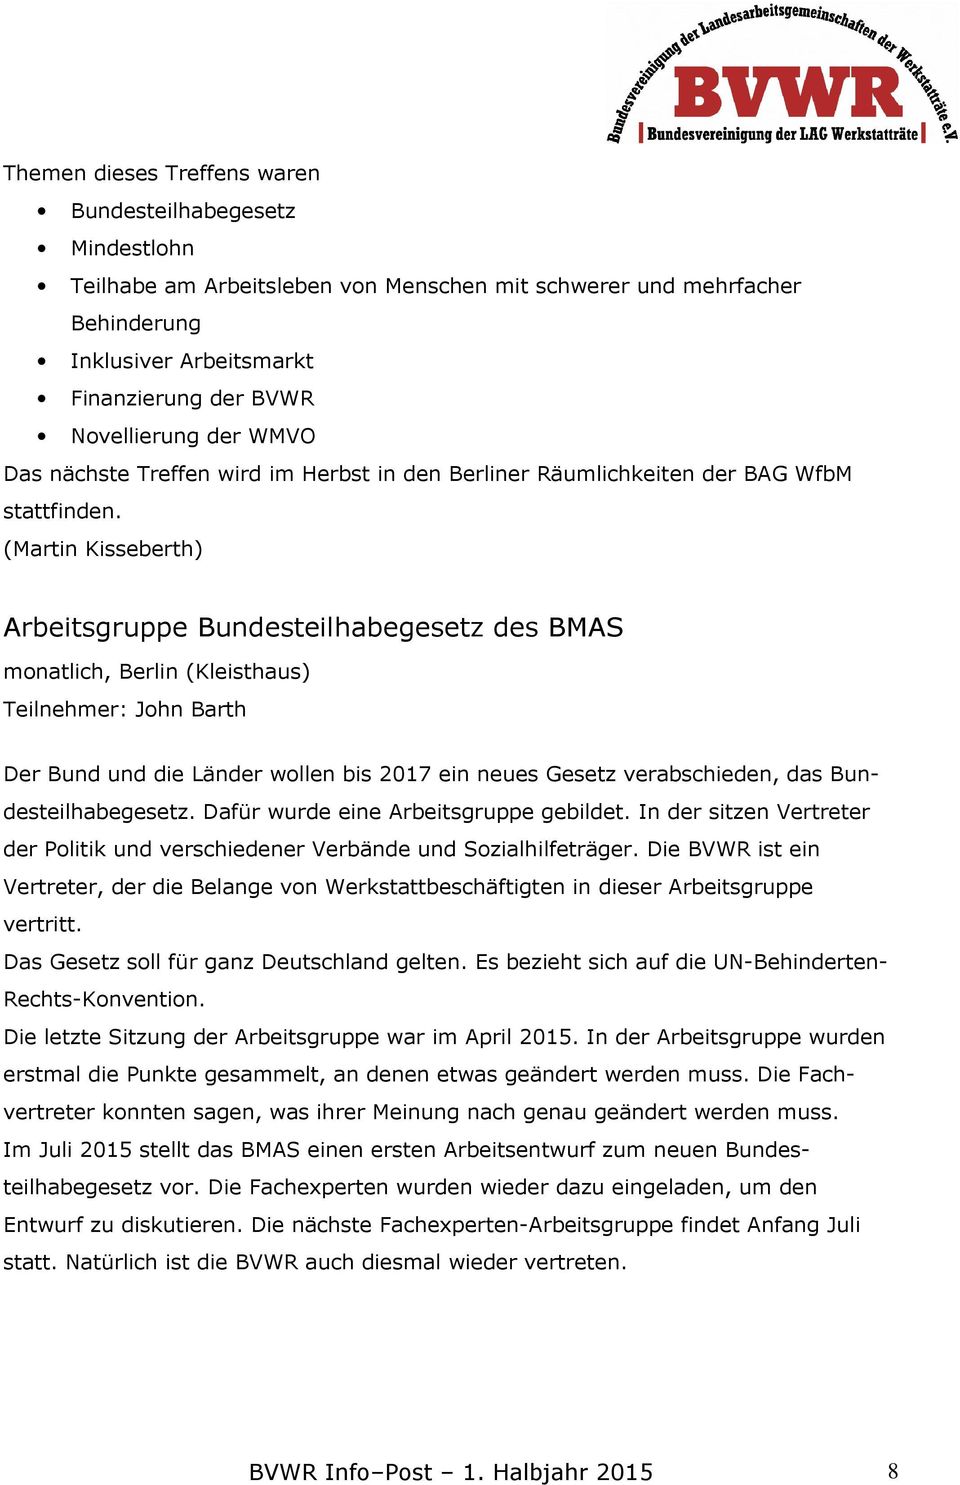 (Martin Kisseberth) Arbeitsgruppe Bundesteilhabegesetz des BMAS monatlich, Berlin (Kleisthaus) Teilnehmer: John Barth Der Bund und die Länder wollen bis 2017 ein neues Gesetz verabschieden, das